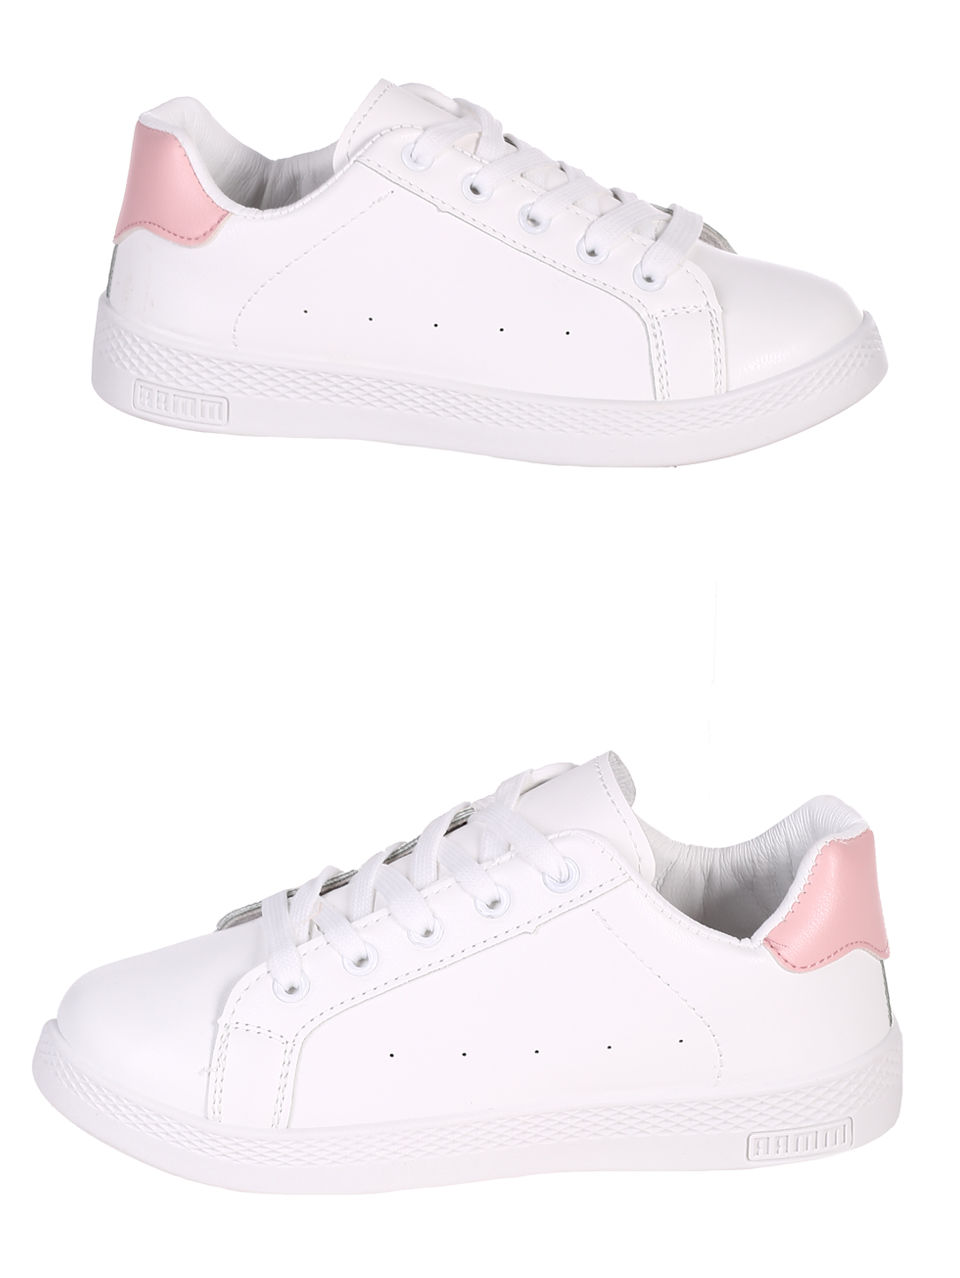 Еждневни дамски кецове в бяло и розово 3U-23046 white/pink